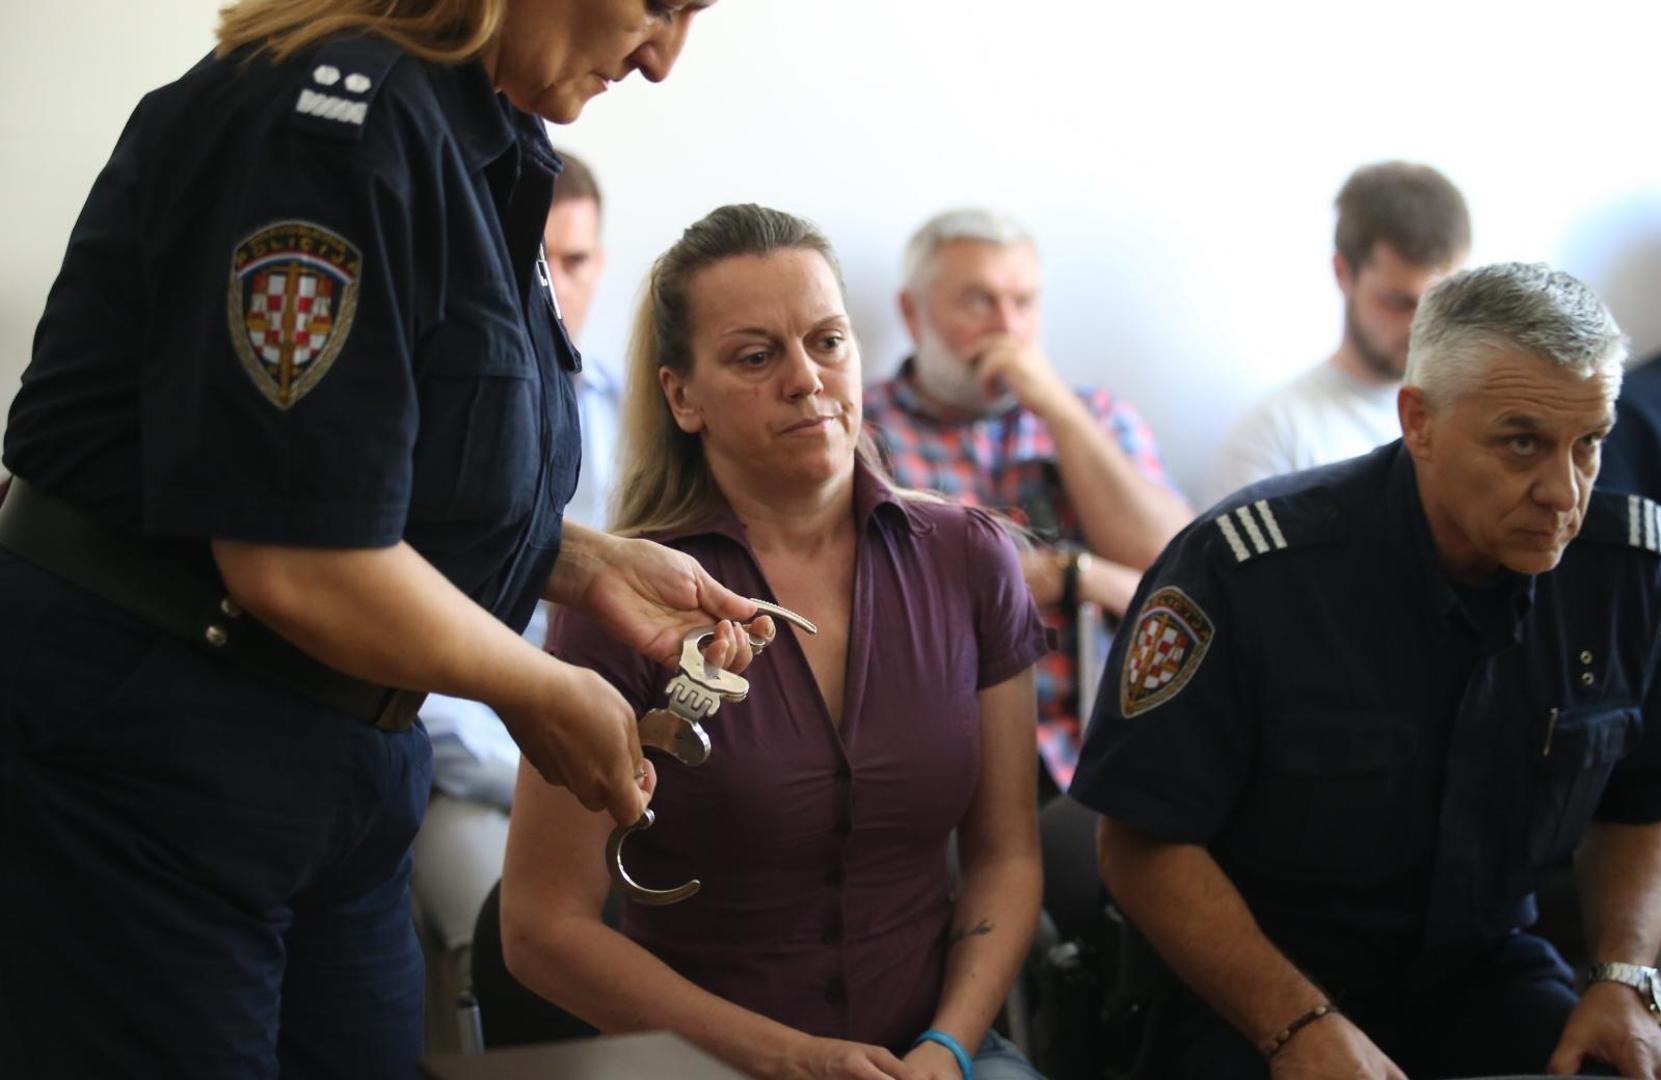 Audijem usmrtila Čapljinku, dobila deset godina robije i doživotnu zabranu upravljanja vozilom